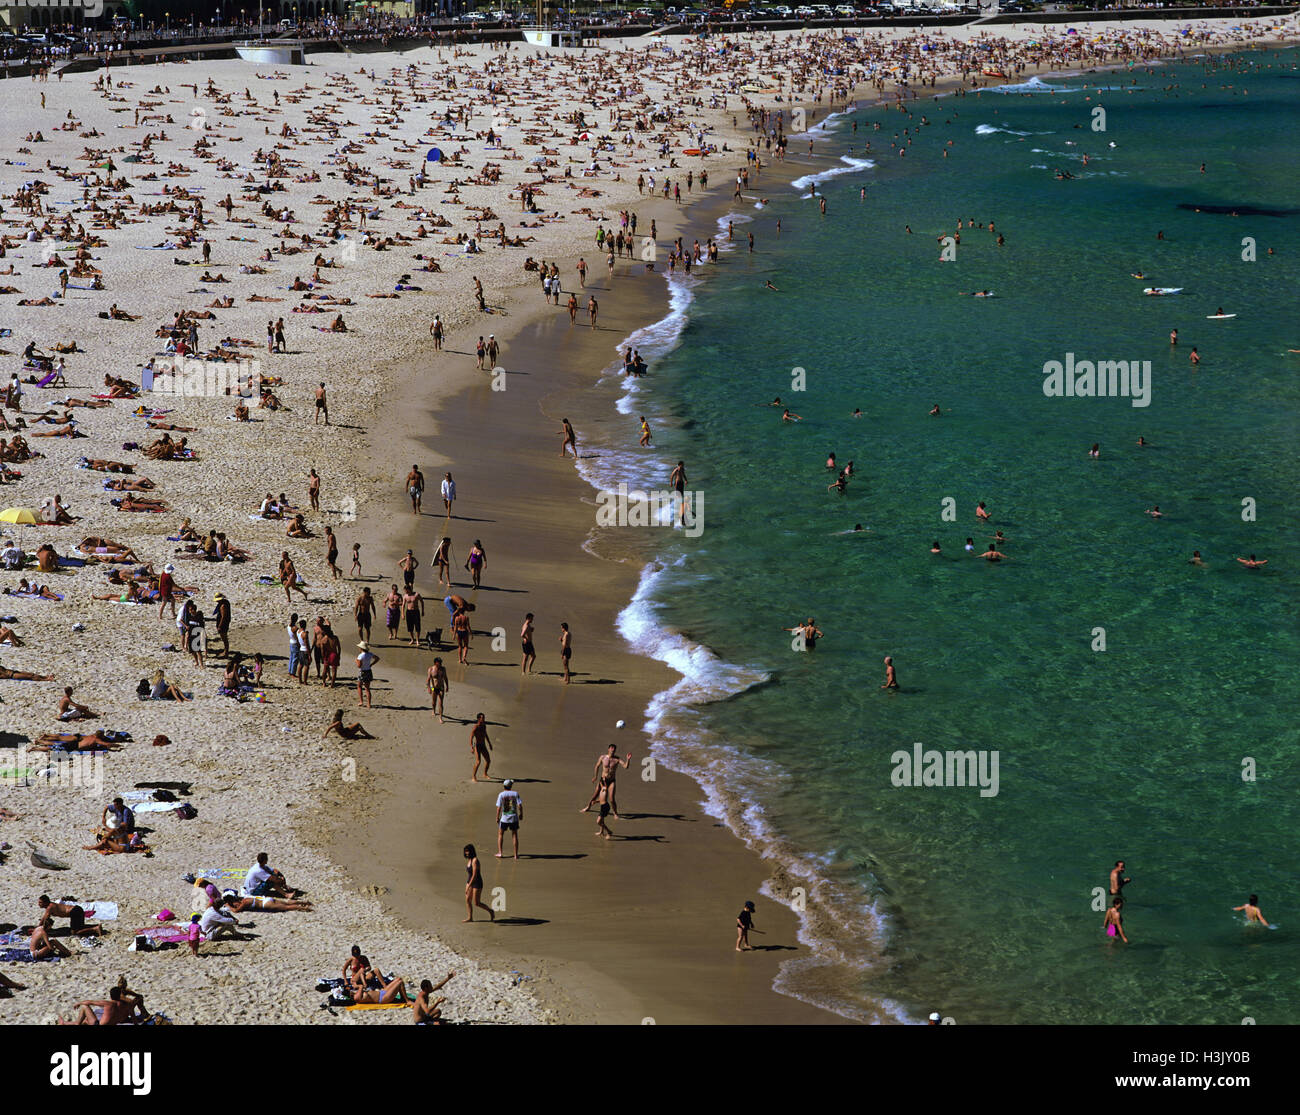 La spiaggia di Bondi, fotografia aerea con grande folla di beachgoers. Foto Stock